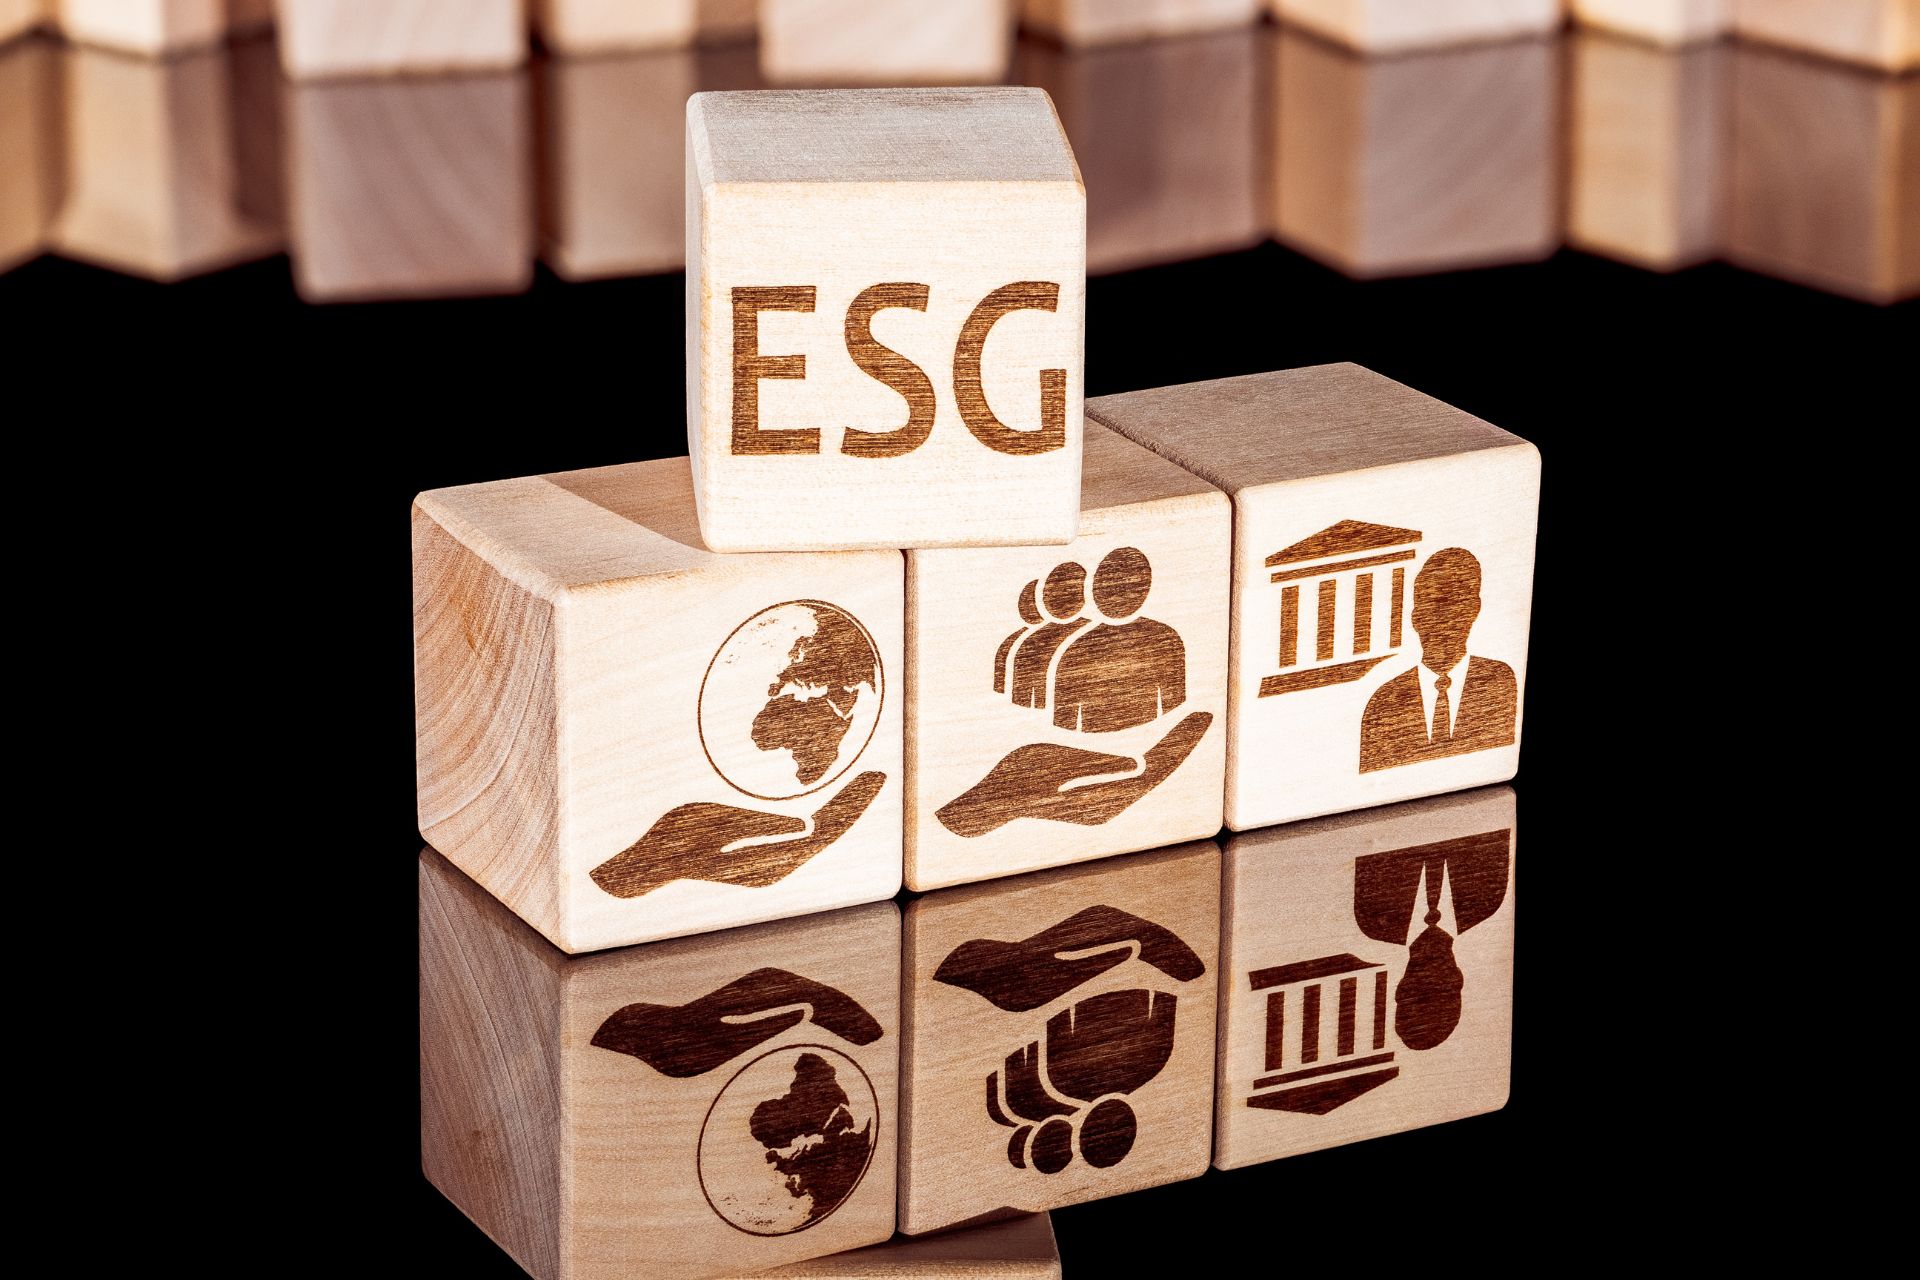 EP Engineering Plastics: Transizione Sostenibile ESG